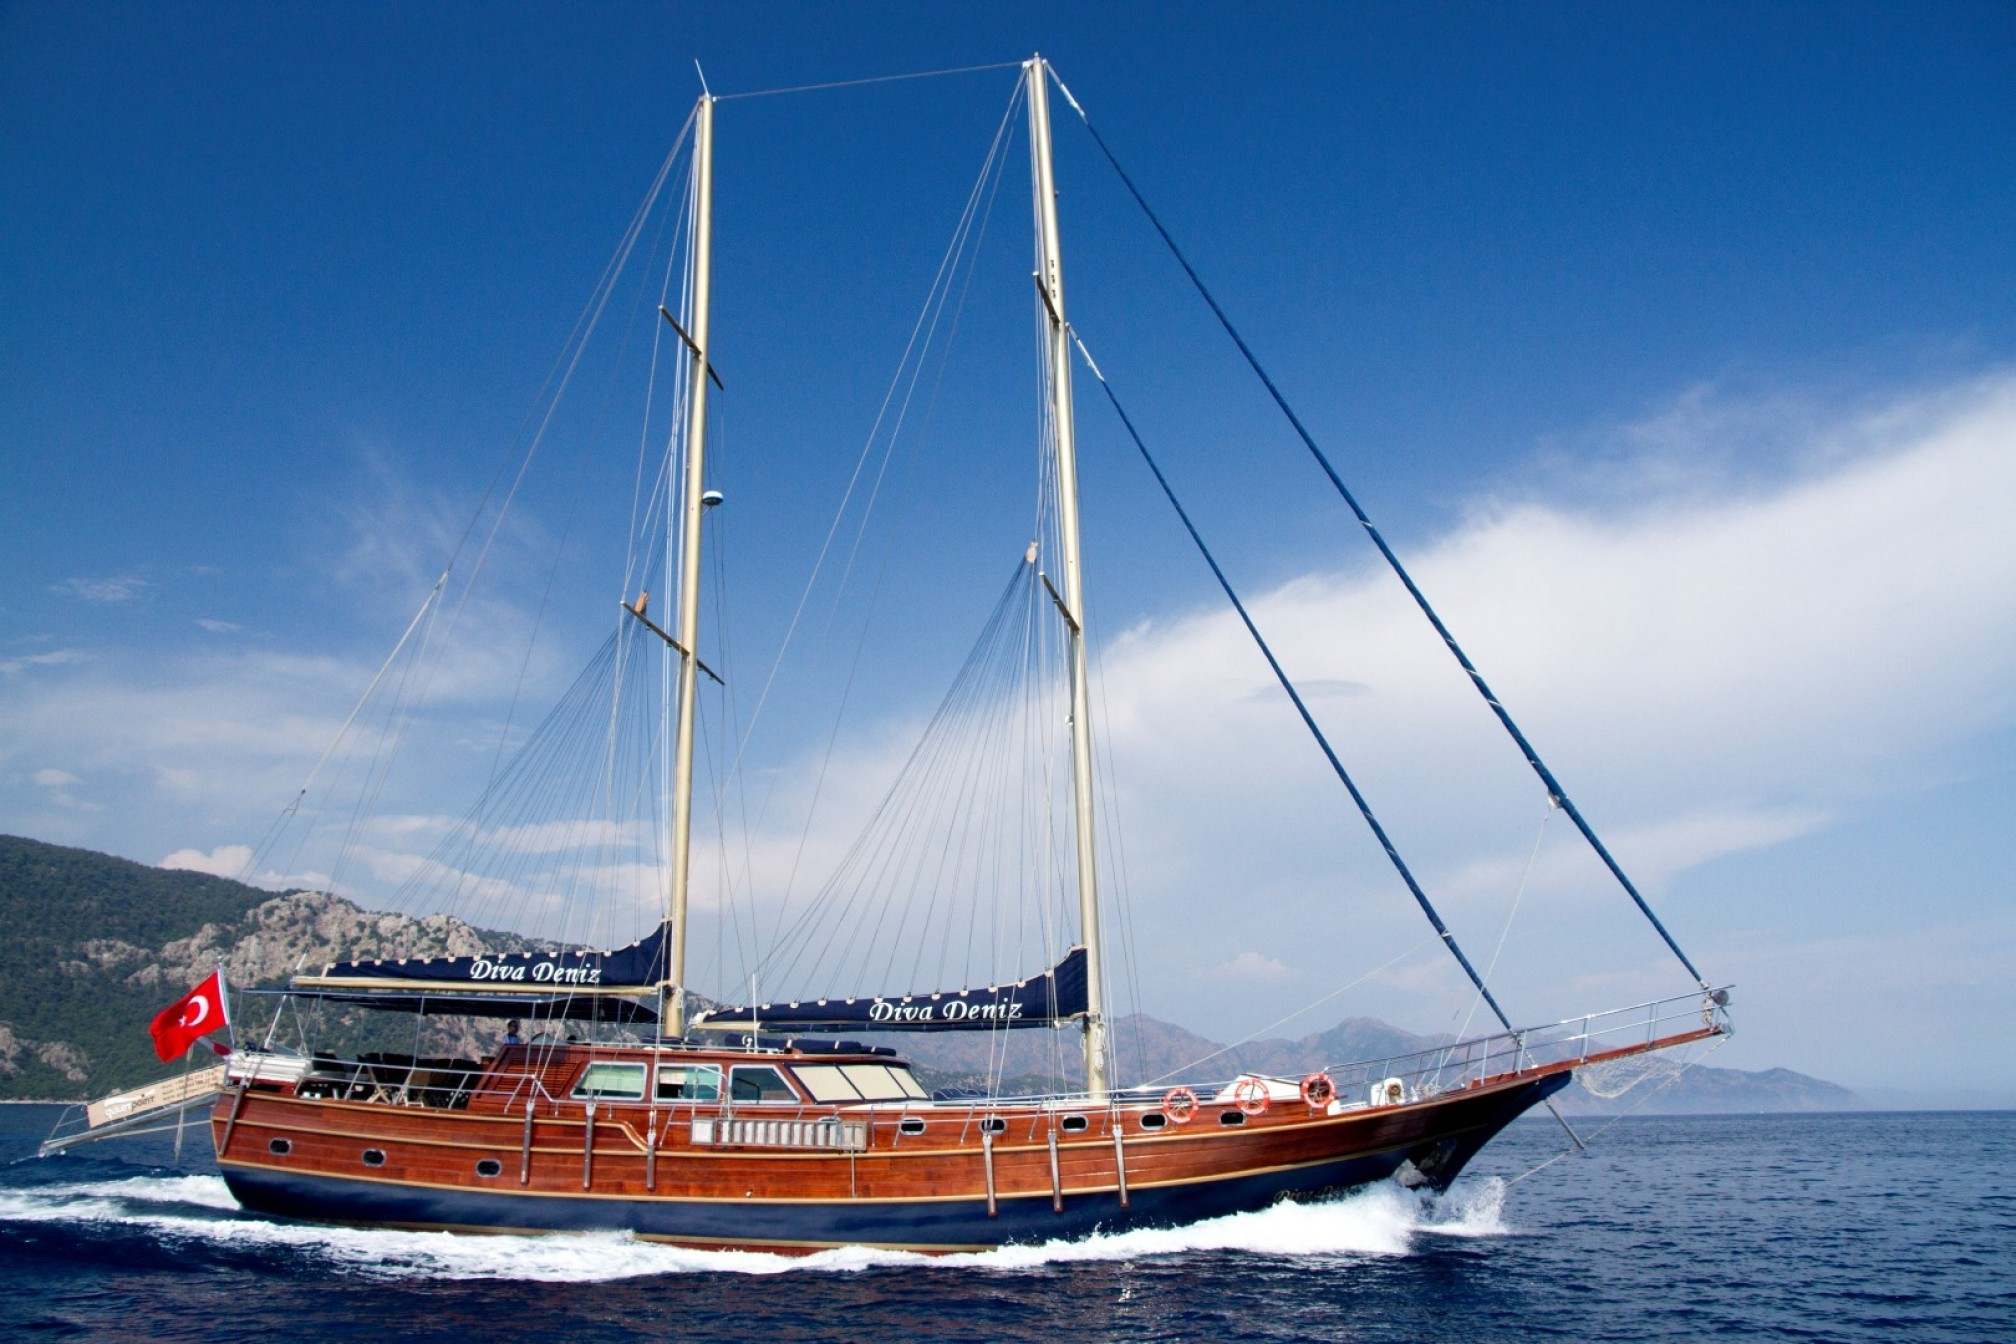  Diva Deniz gulet charter sailing 